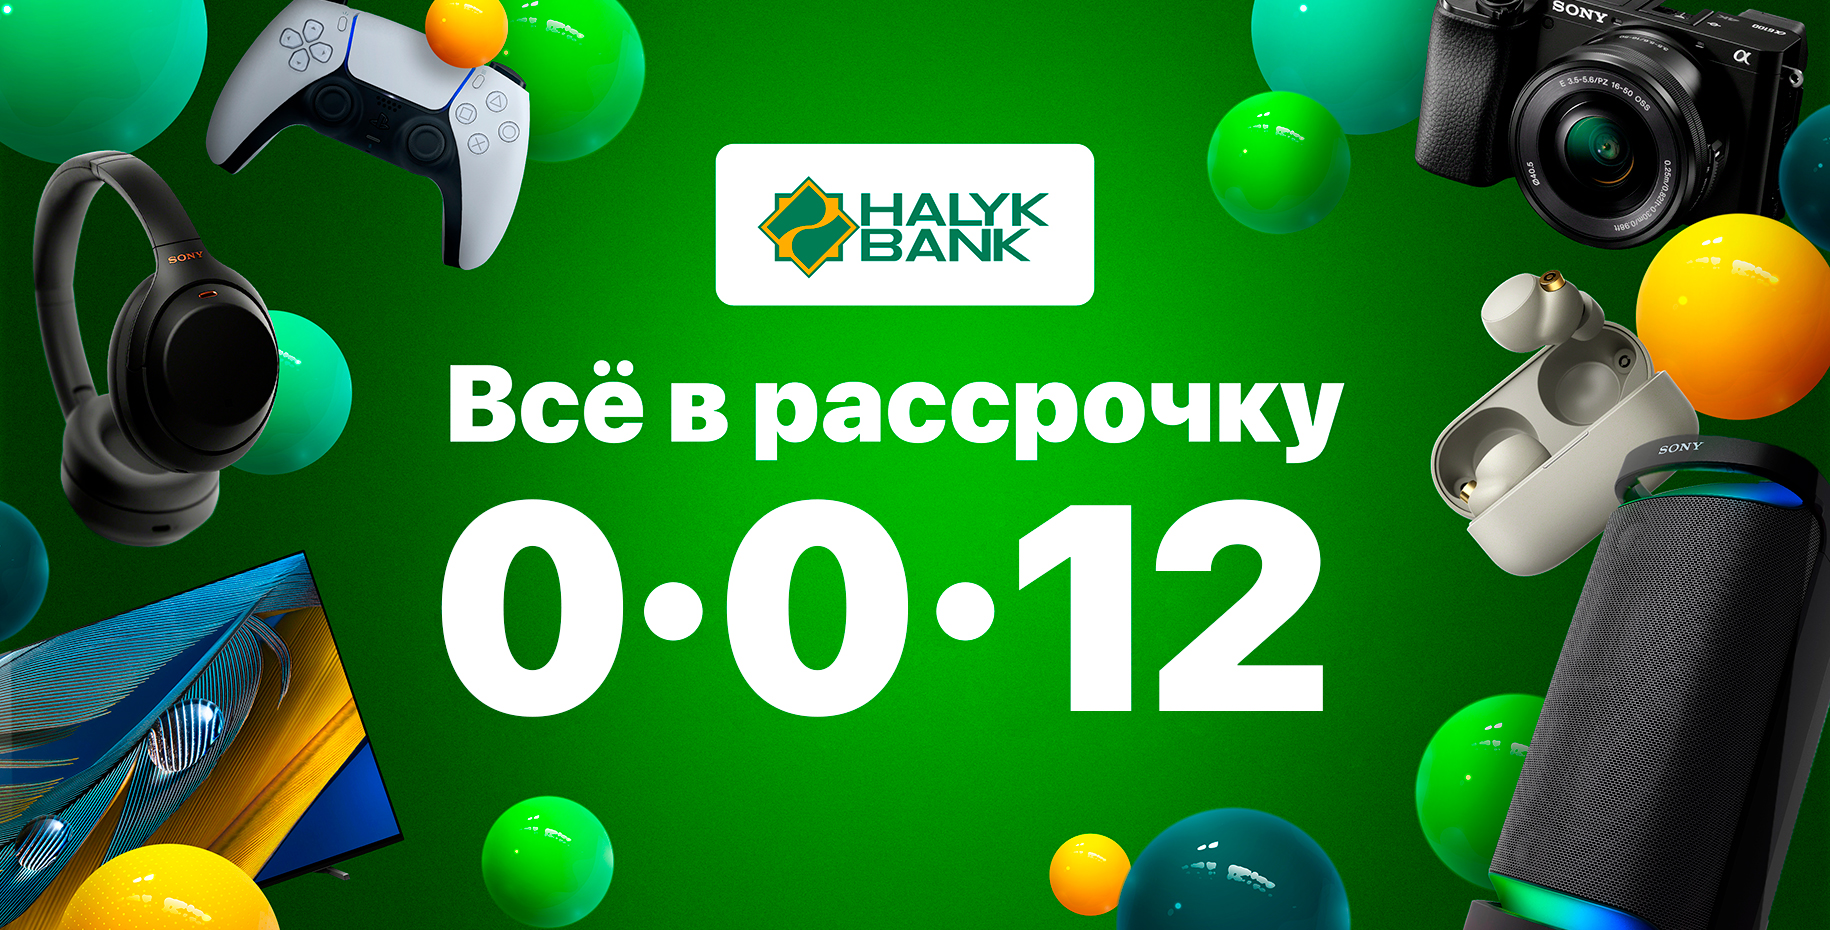 Рассрочка 0-0-12 Halyk Bank